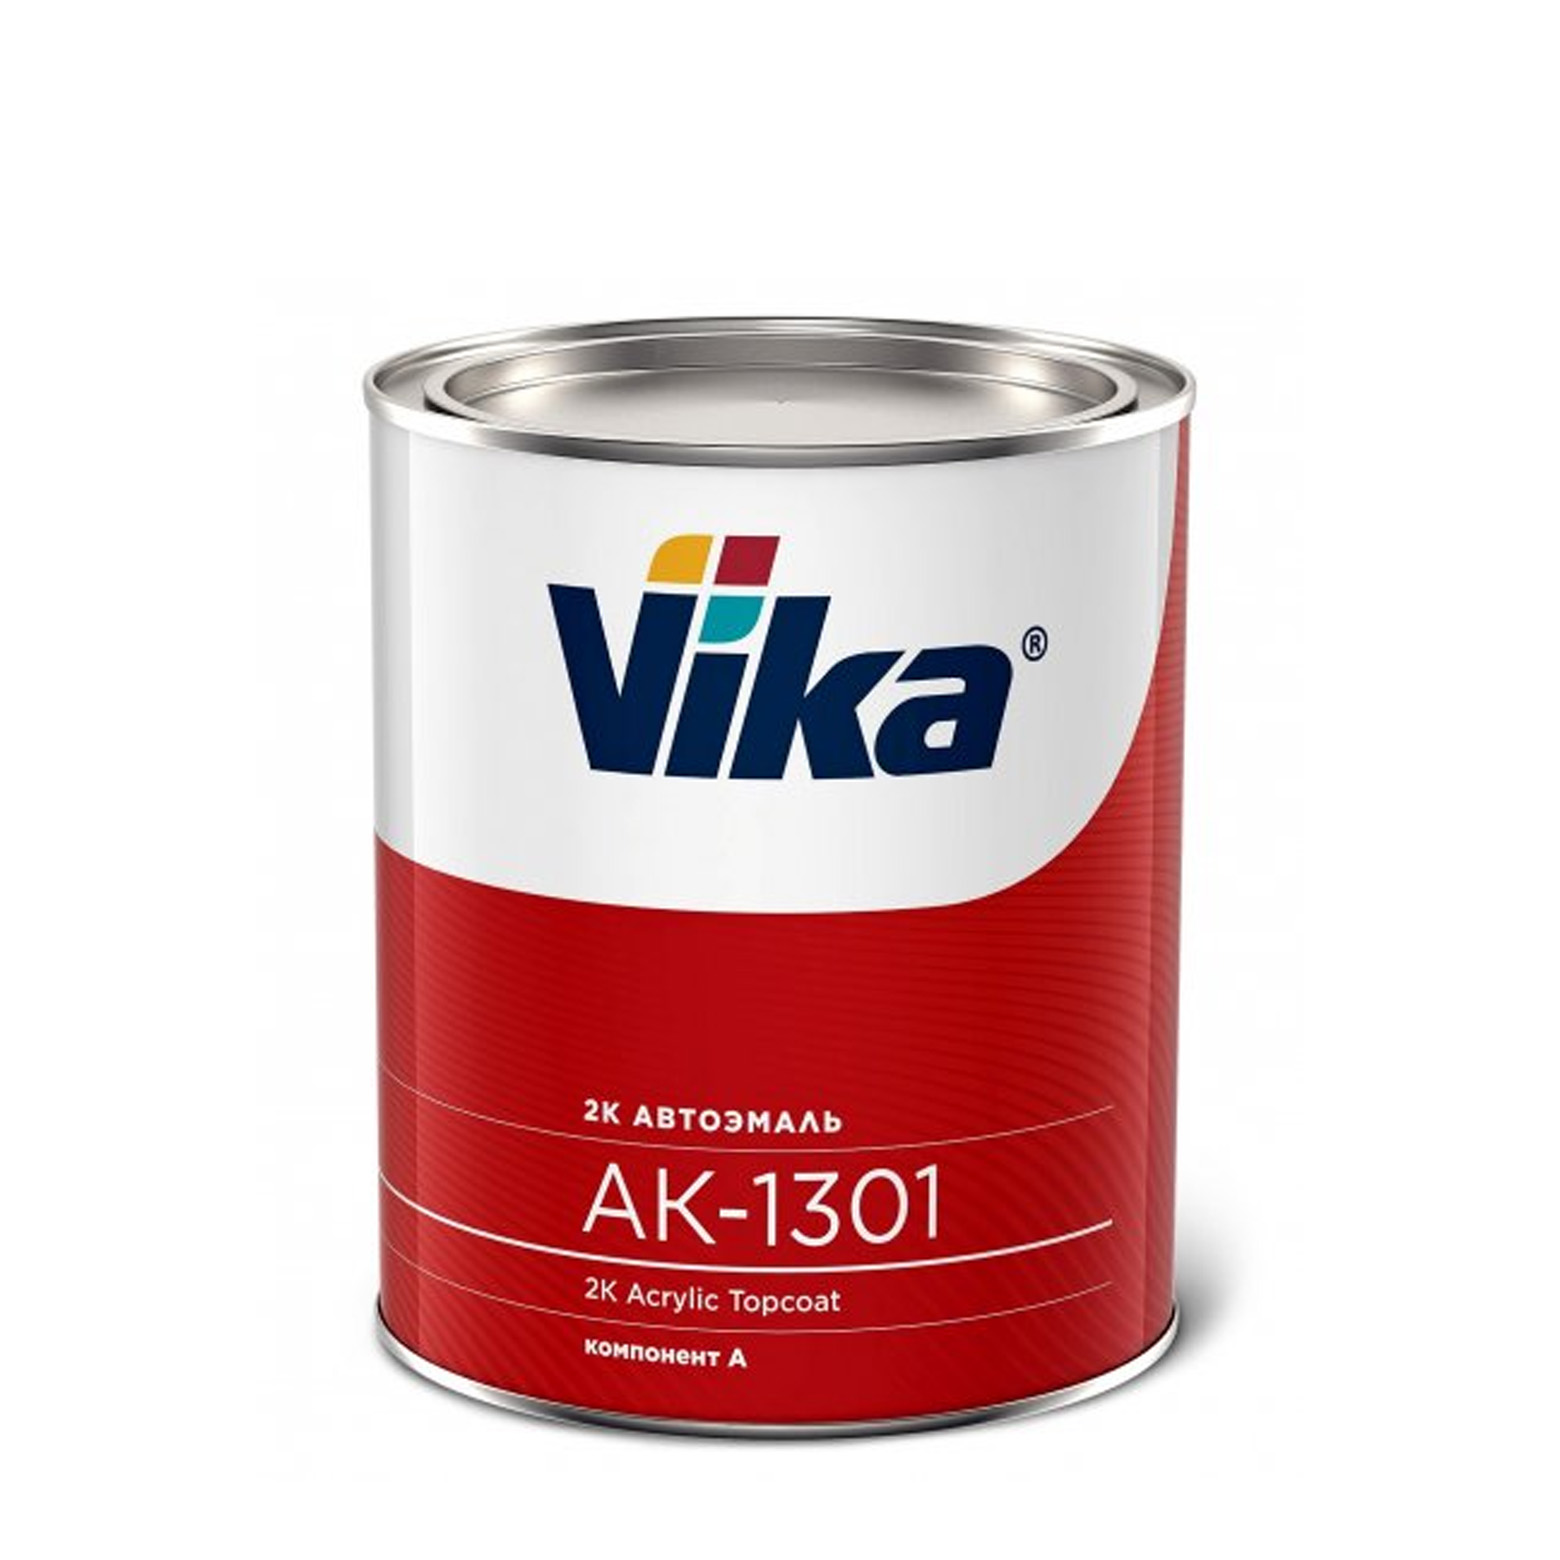 Фото 1 - Автоэмаль АК-1301, цвет 481 Ярко-Голубая акриловая двухкомпонентная полуглянцевая - 0,85 кг Vika/Вика.